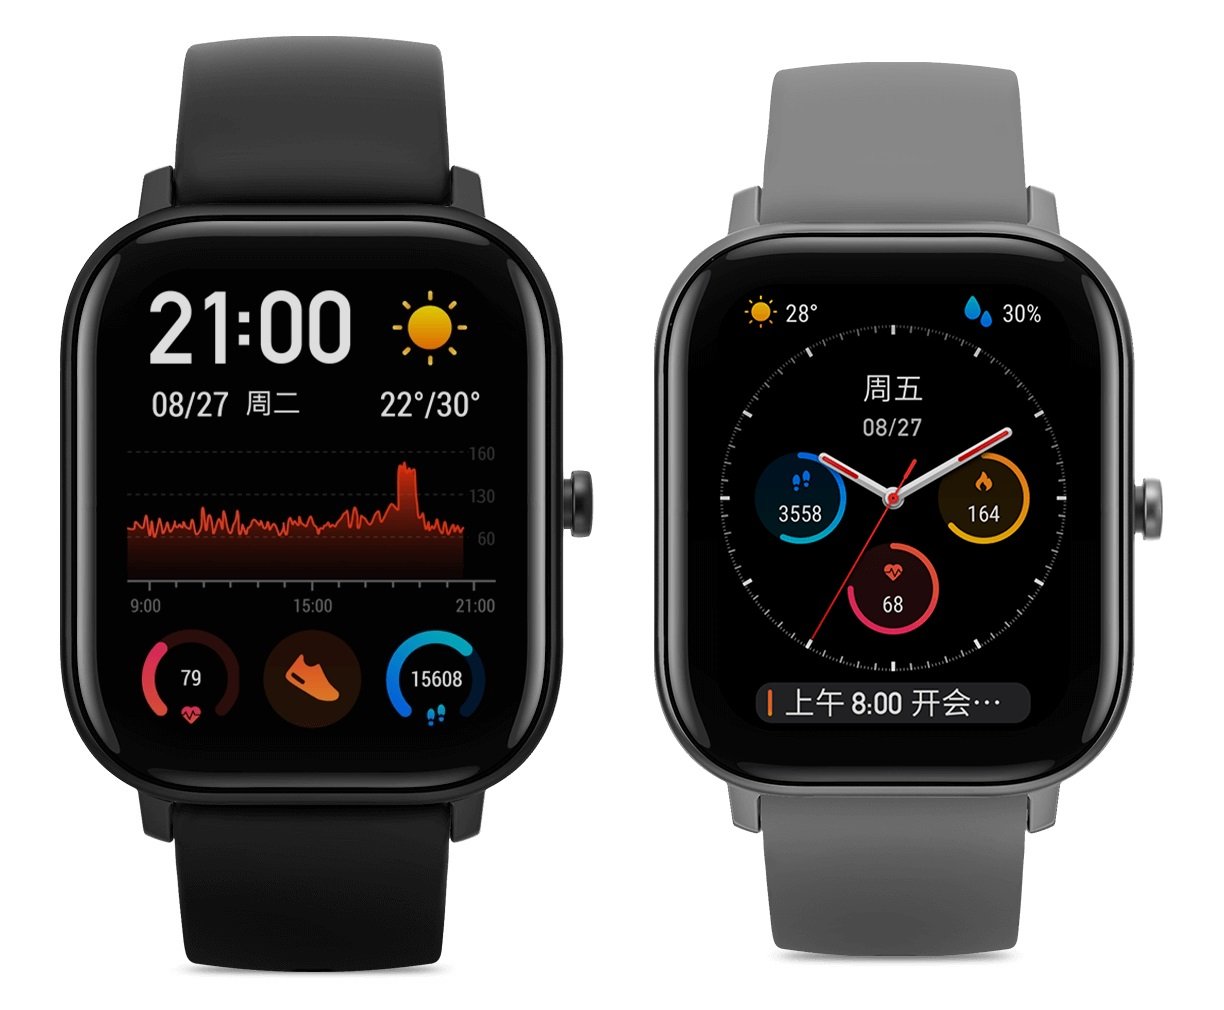 Die Amazfit GTS ähnelt sehr der Apple Watch, das Gehäuse ist aus Metall gefertigt, die Oberseite ist Corning Gorilla Glass 3.